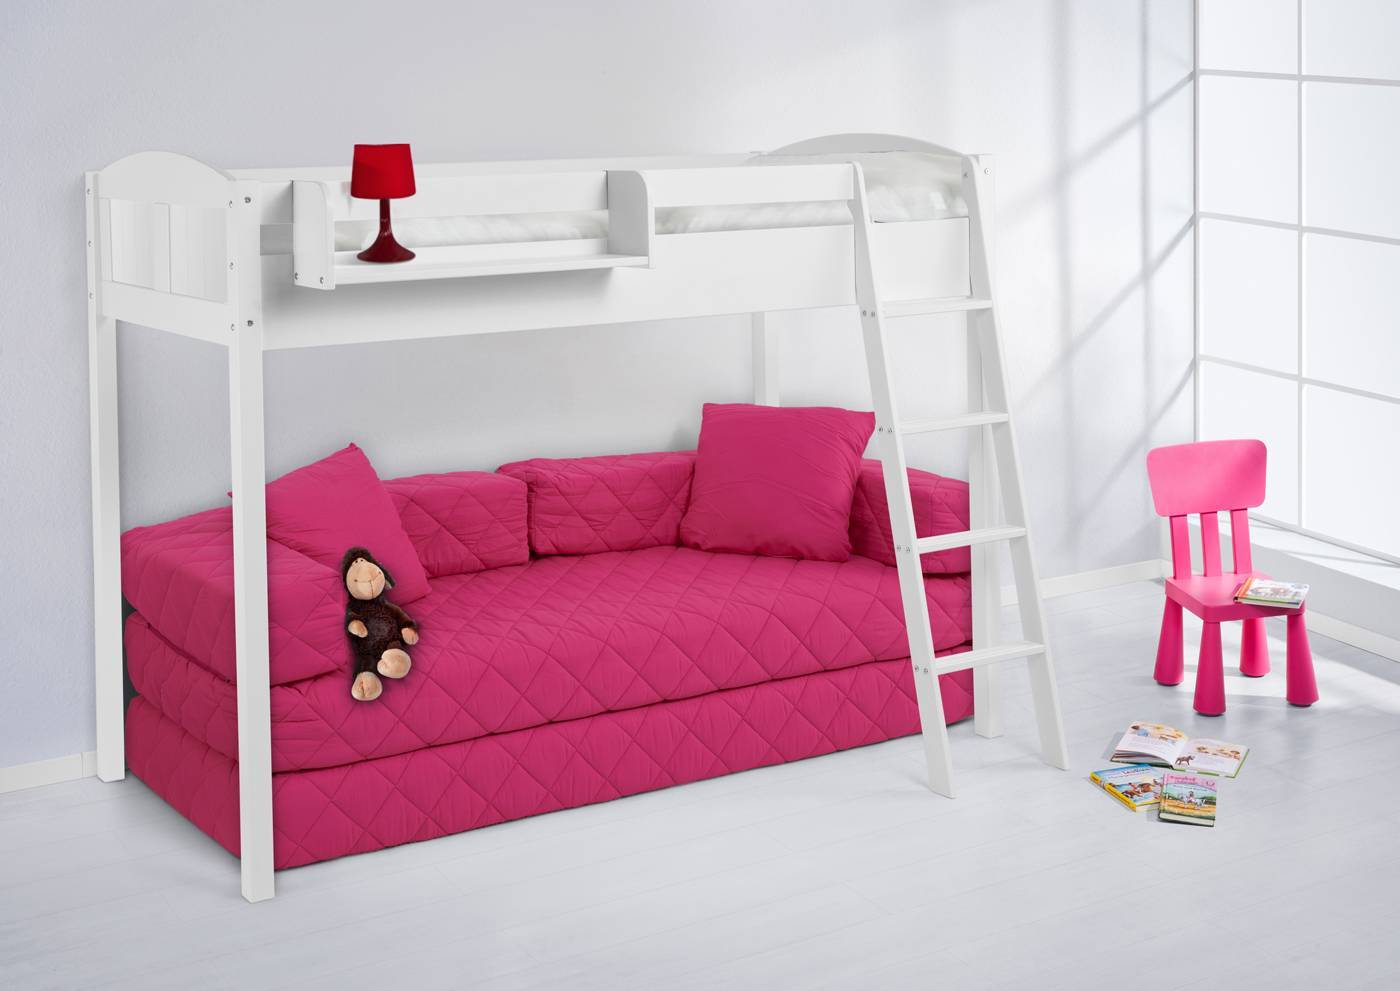 Двухъярусная кровать с диваном внизу для родителей: особенности конструкции и функциональность, варианты использования